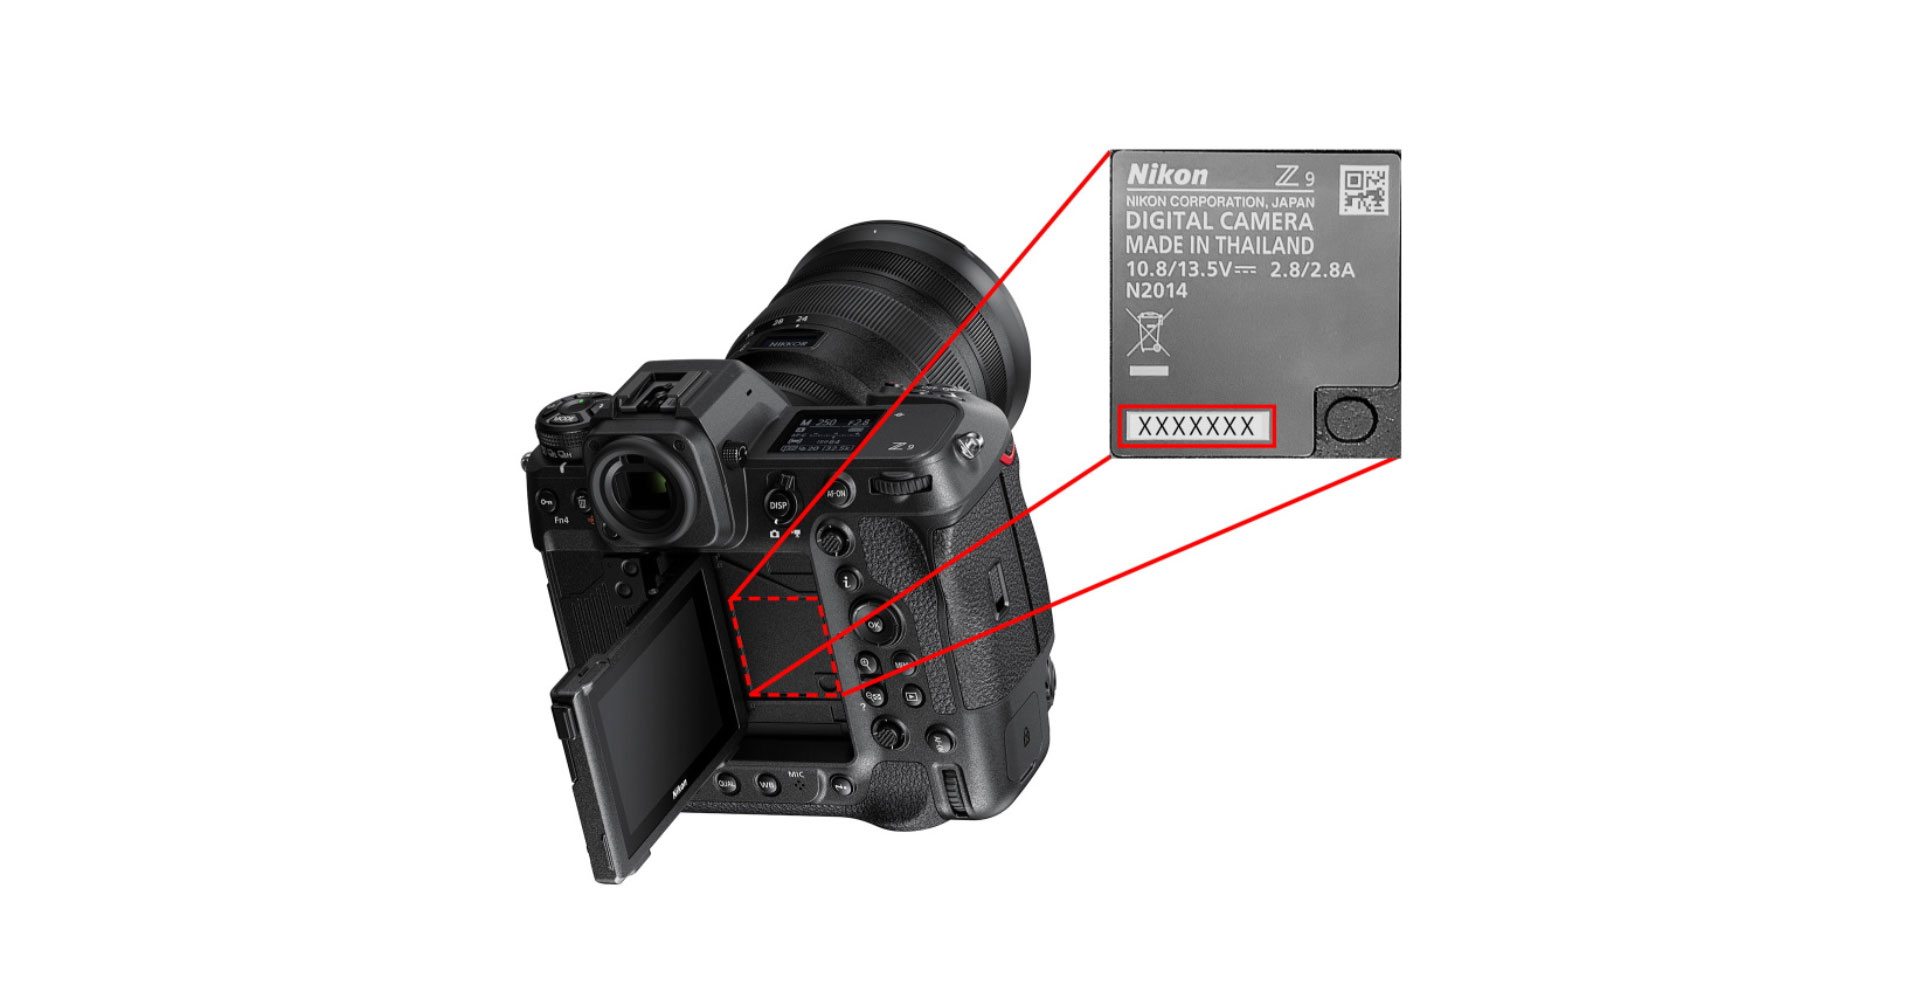 Nikon ชี้แจง อาจมีกล้อง Z9 บางตัวปุ่มปลดเลนส์มีปัญหา ตรวจสอบได้จาก serial number